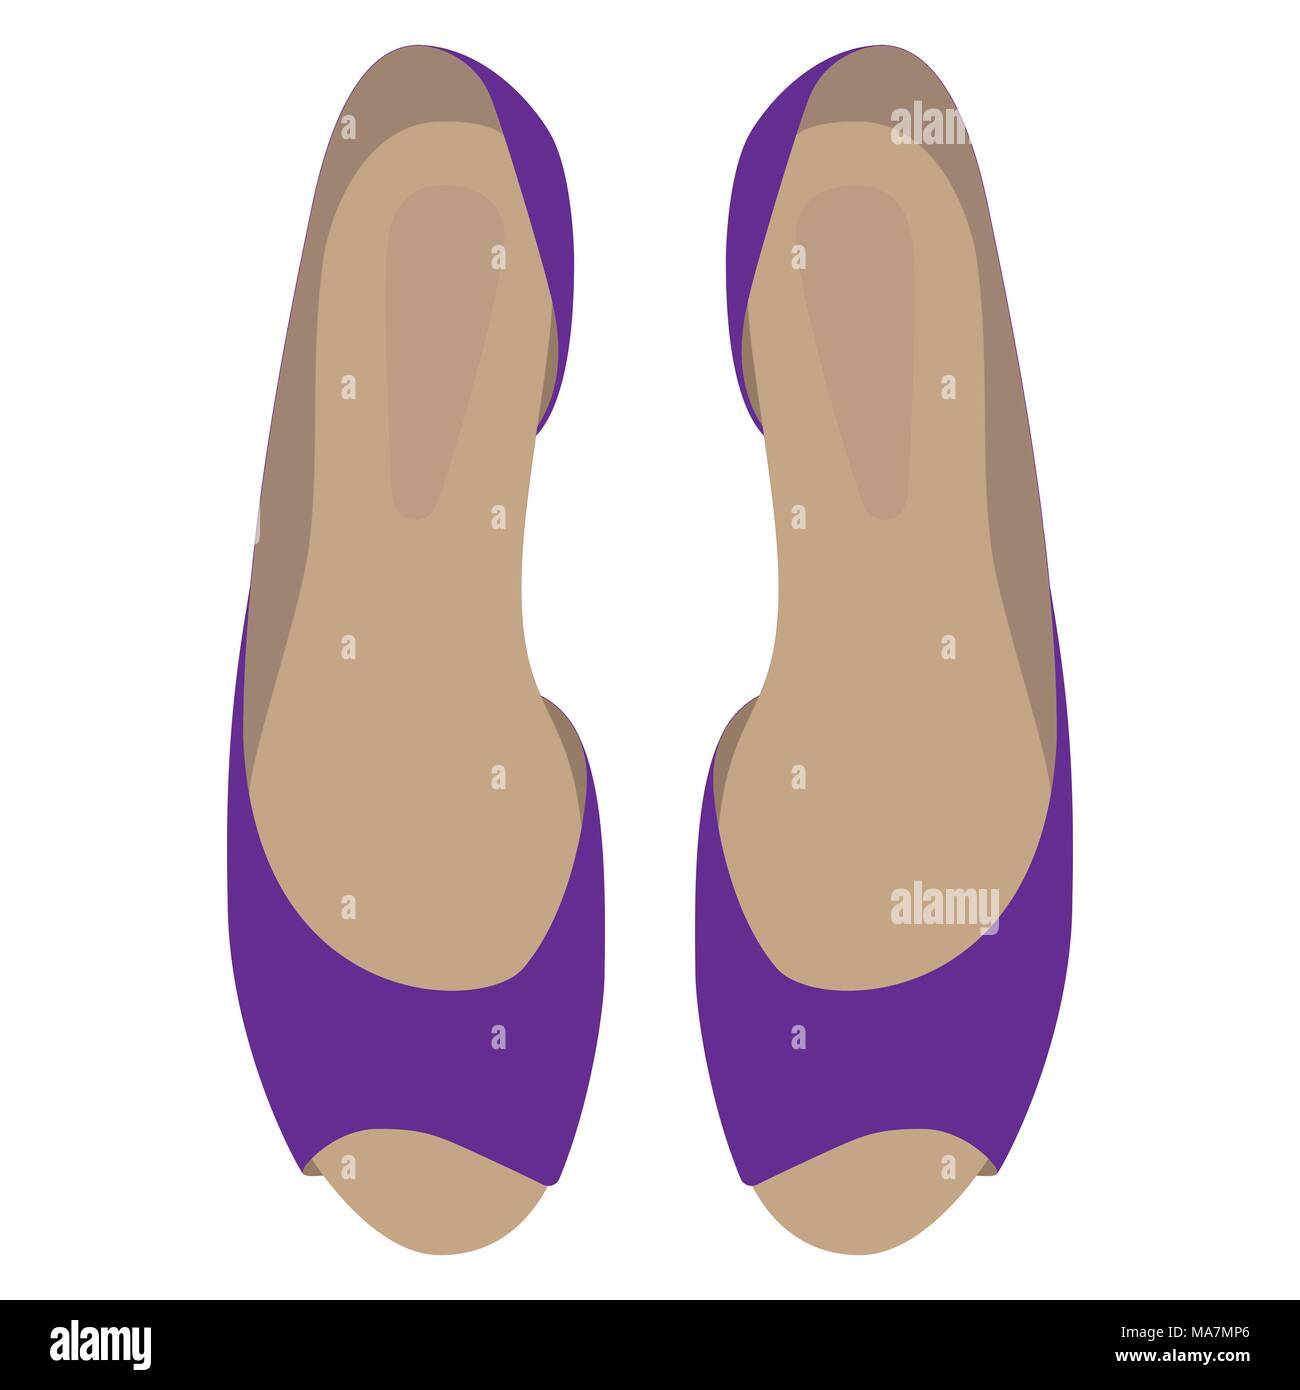 Sommer Damen s Violet elegantes Ballett flache Schuhe auf weißem Hintergrund. Vektor close-up Cartoon Illustration Stock Vektor